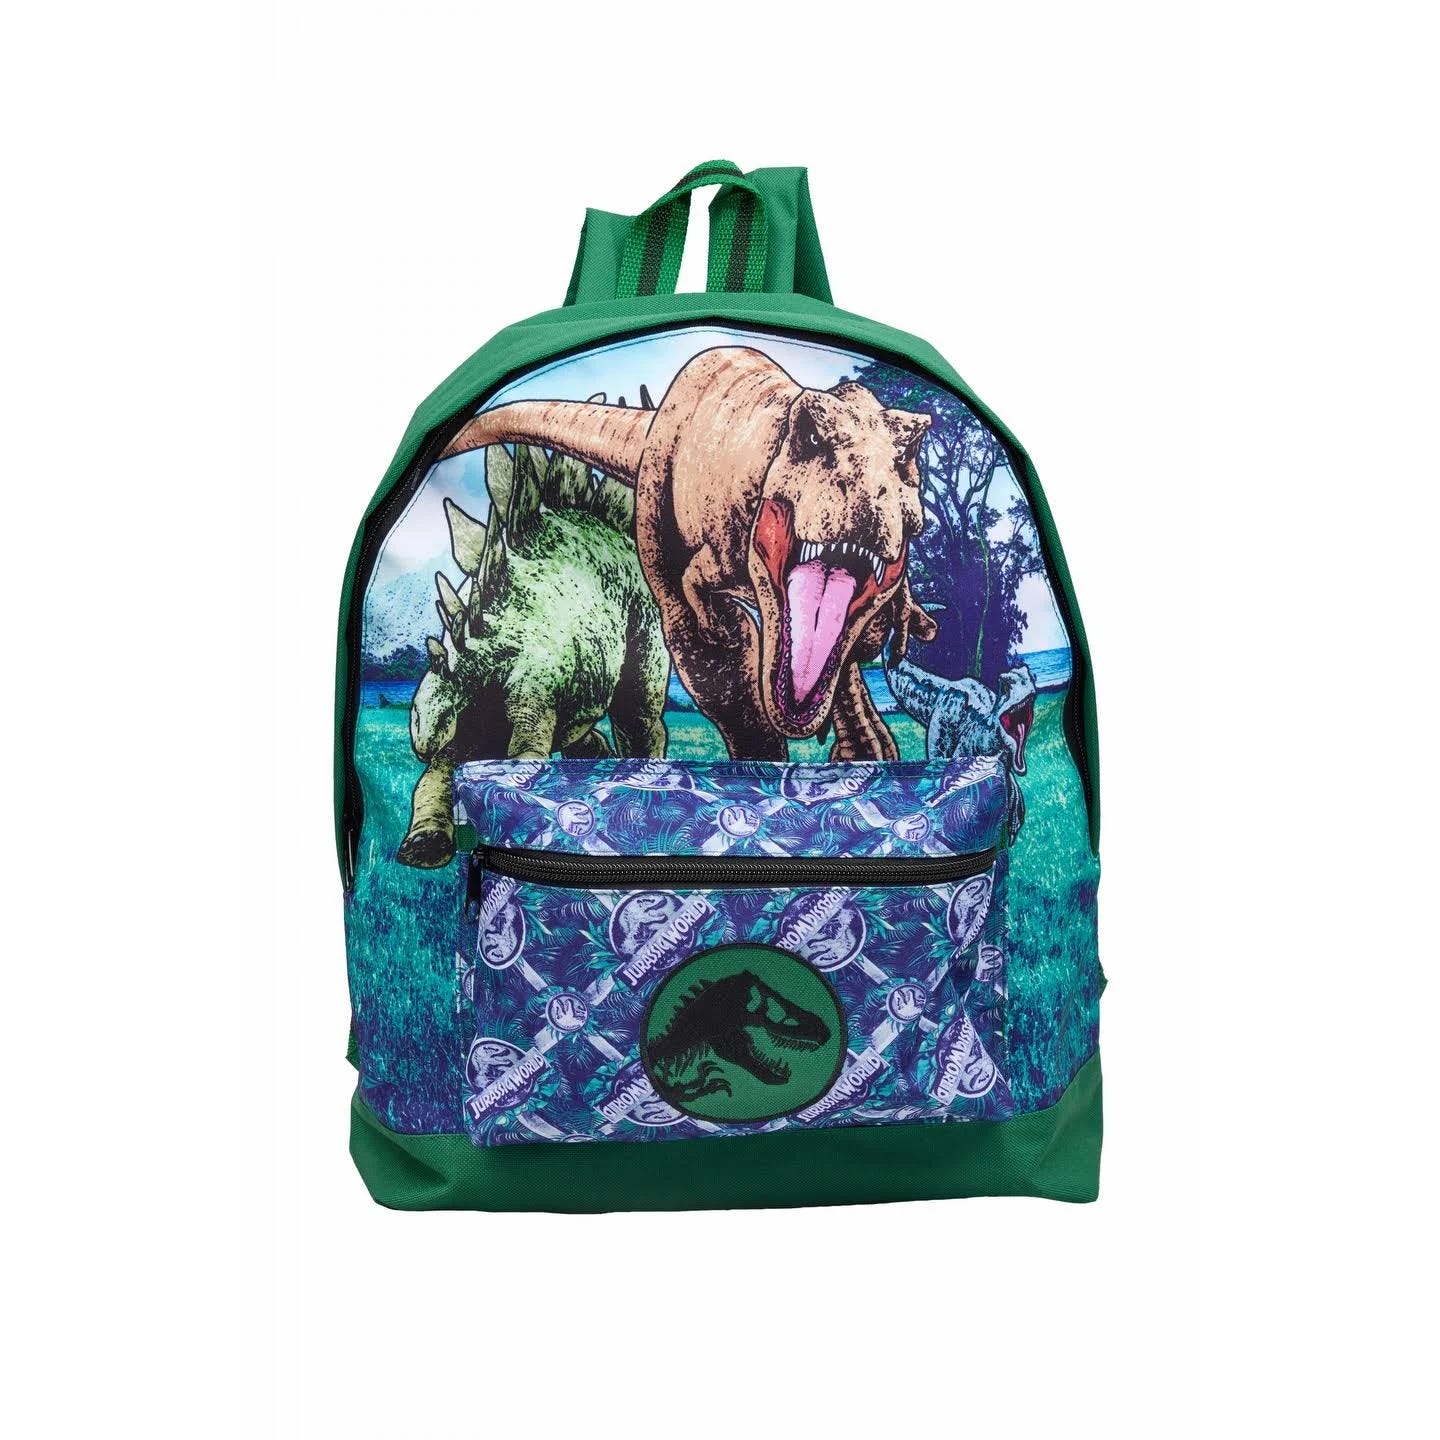 Jurassic World Green Backpack for Women | Image